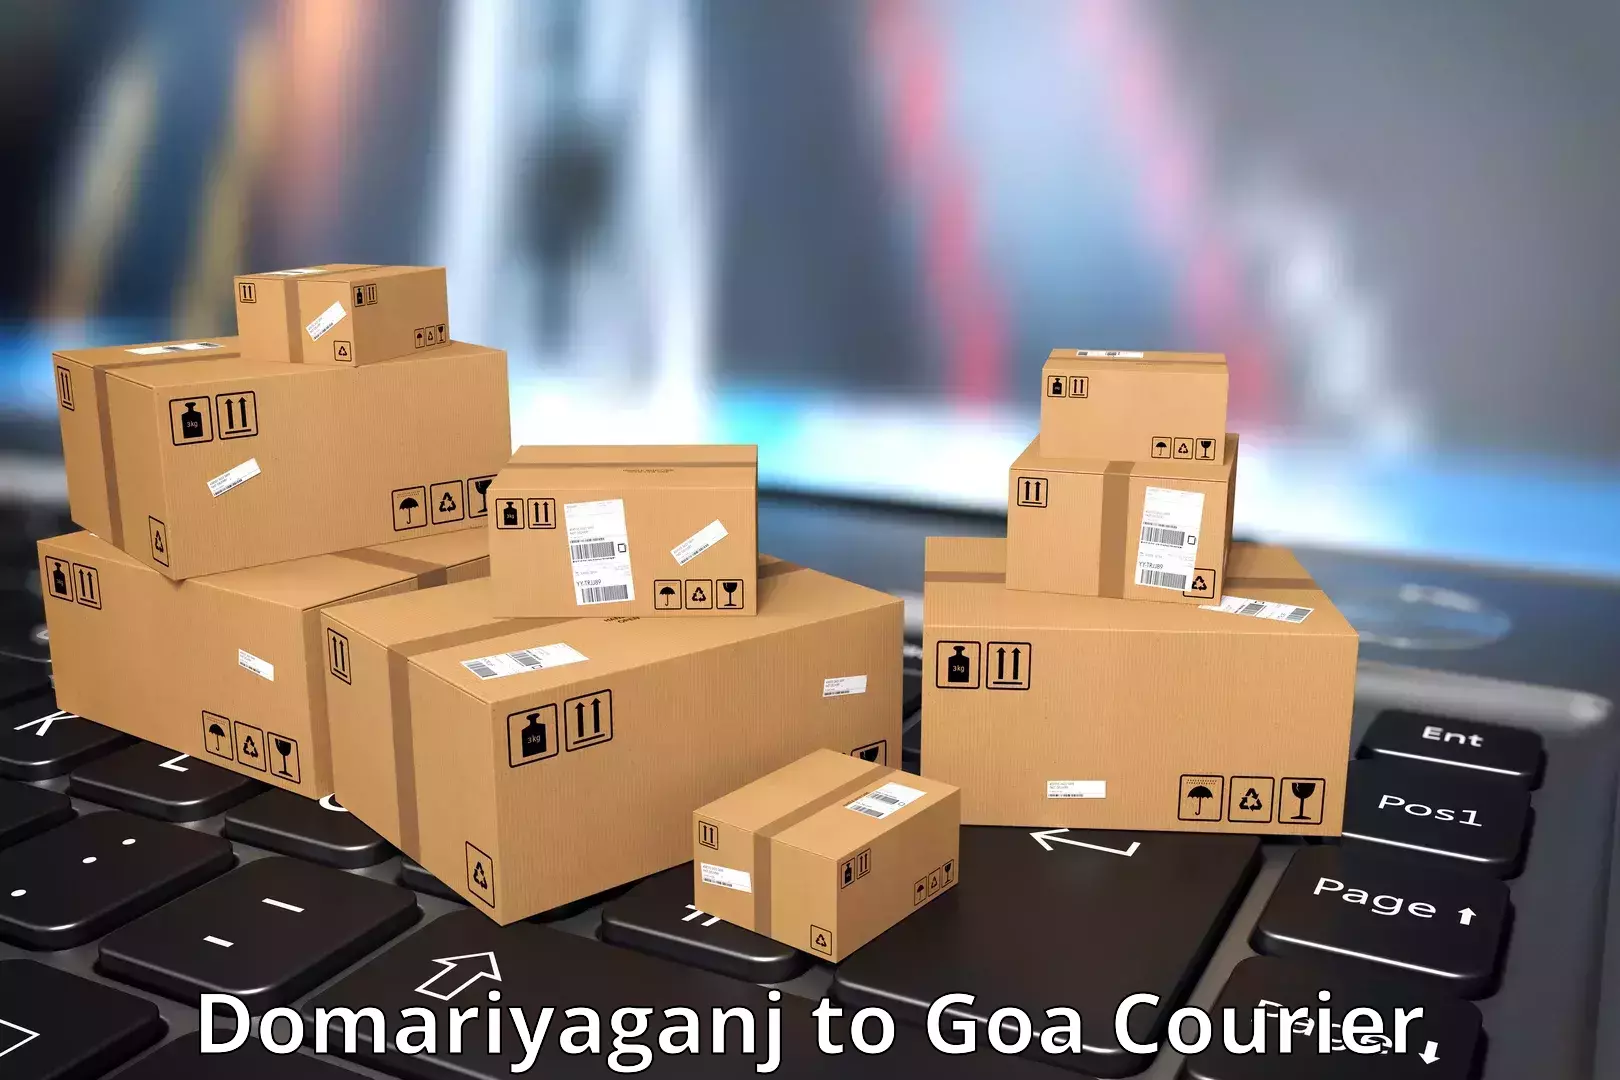 On-call courier service Domariyaganj to Panaji